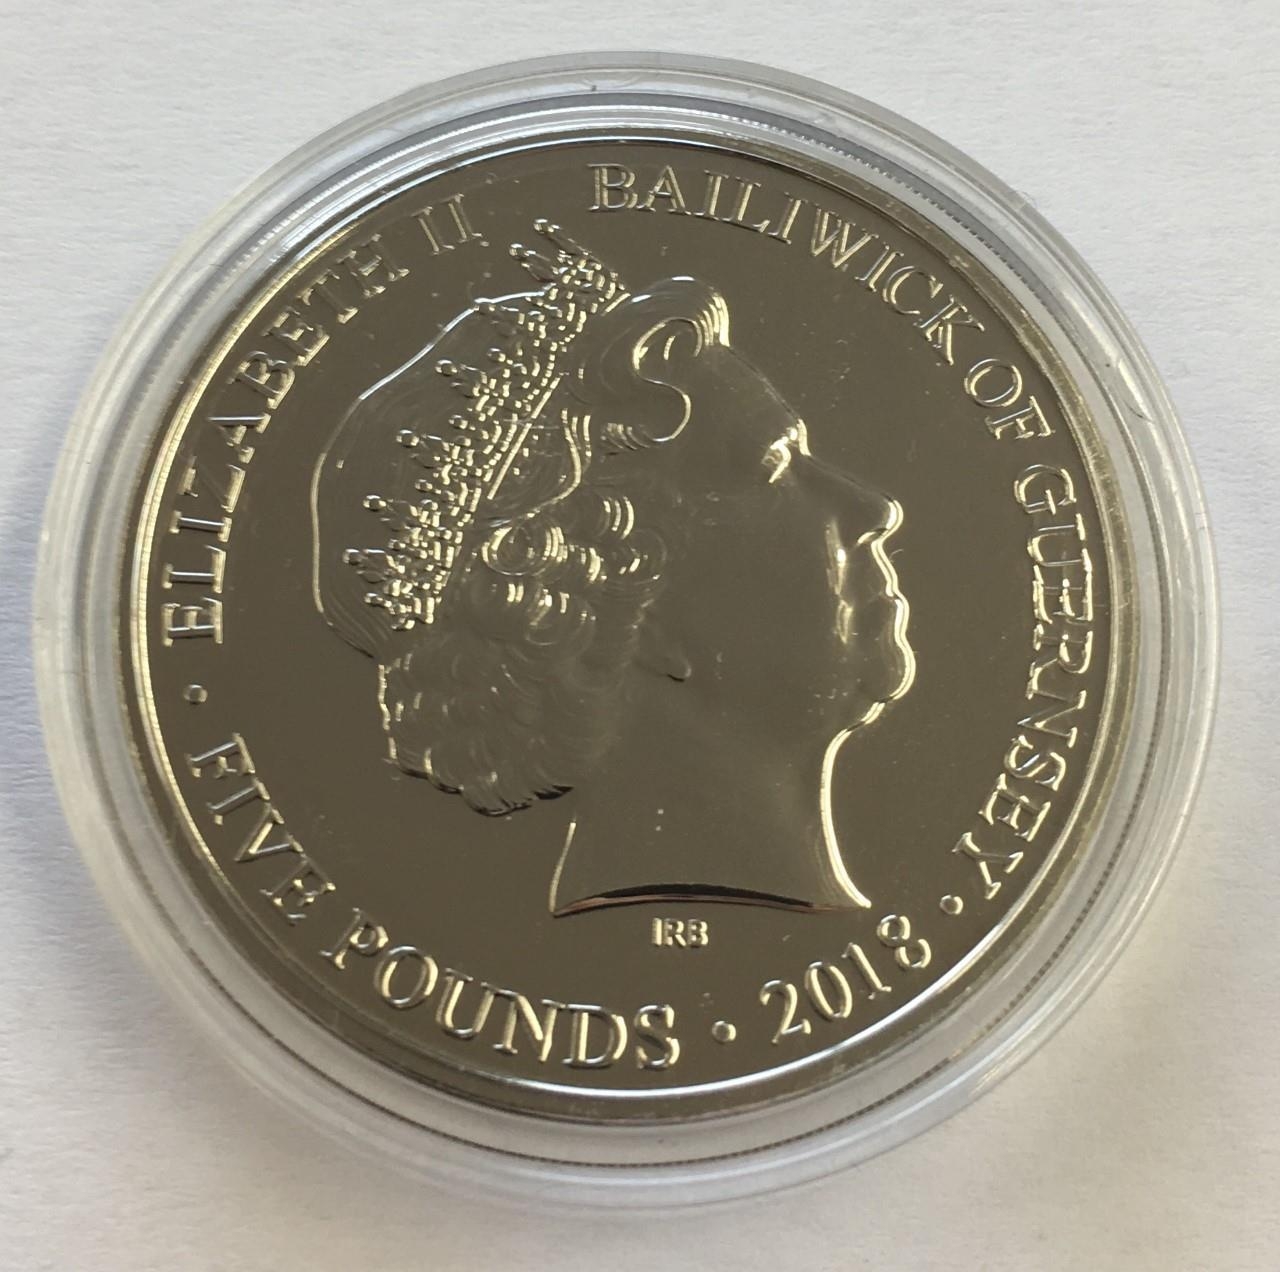 2018 Queen Elizabeth Silver Jubilee £5 Coin.